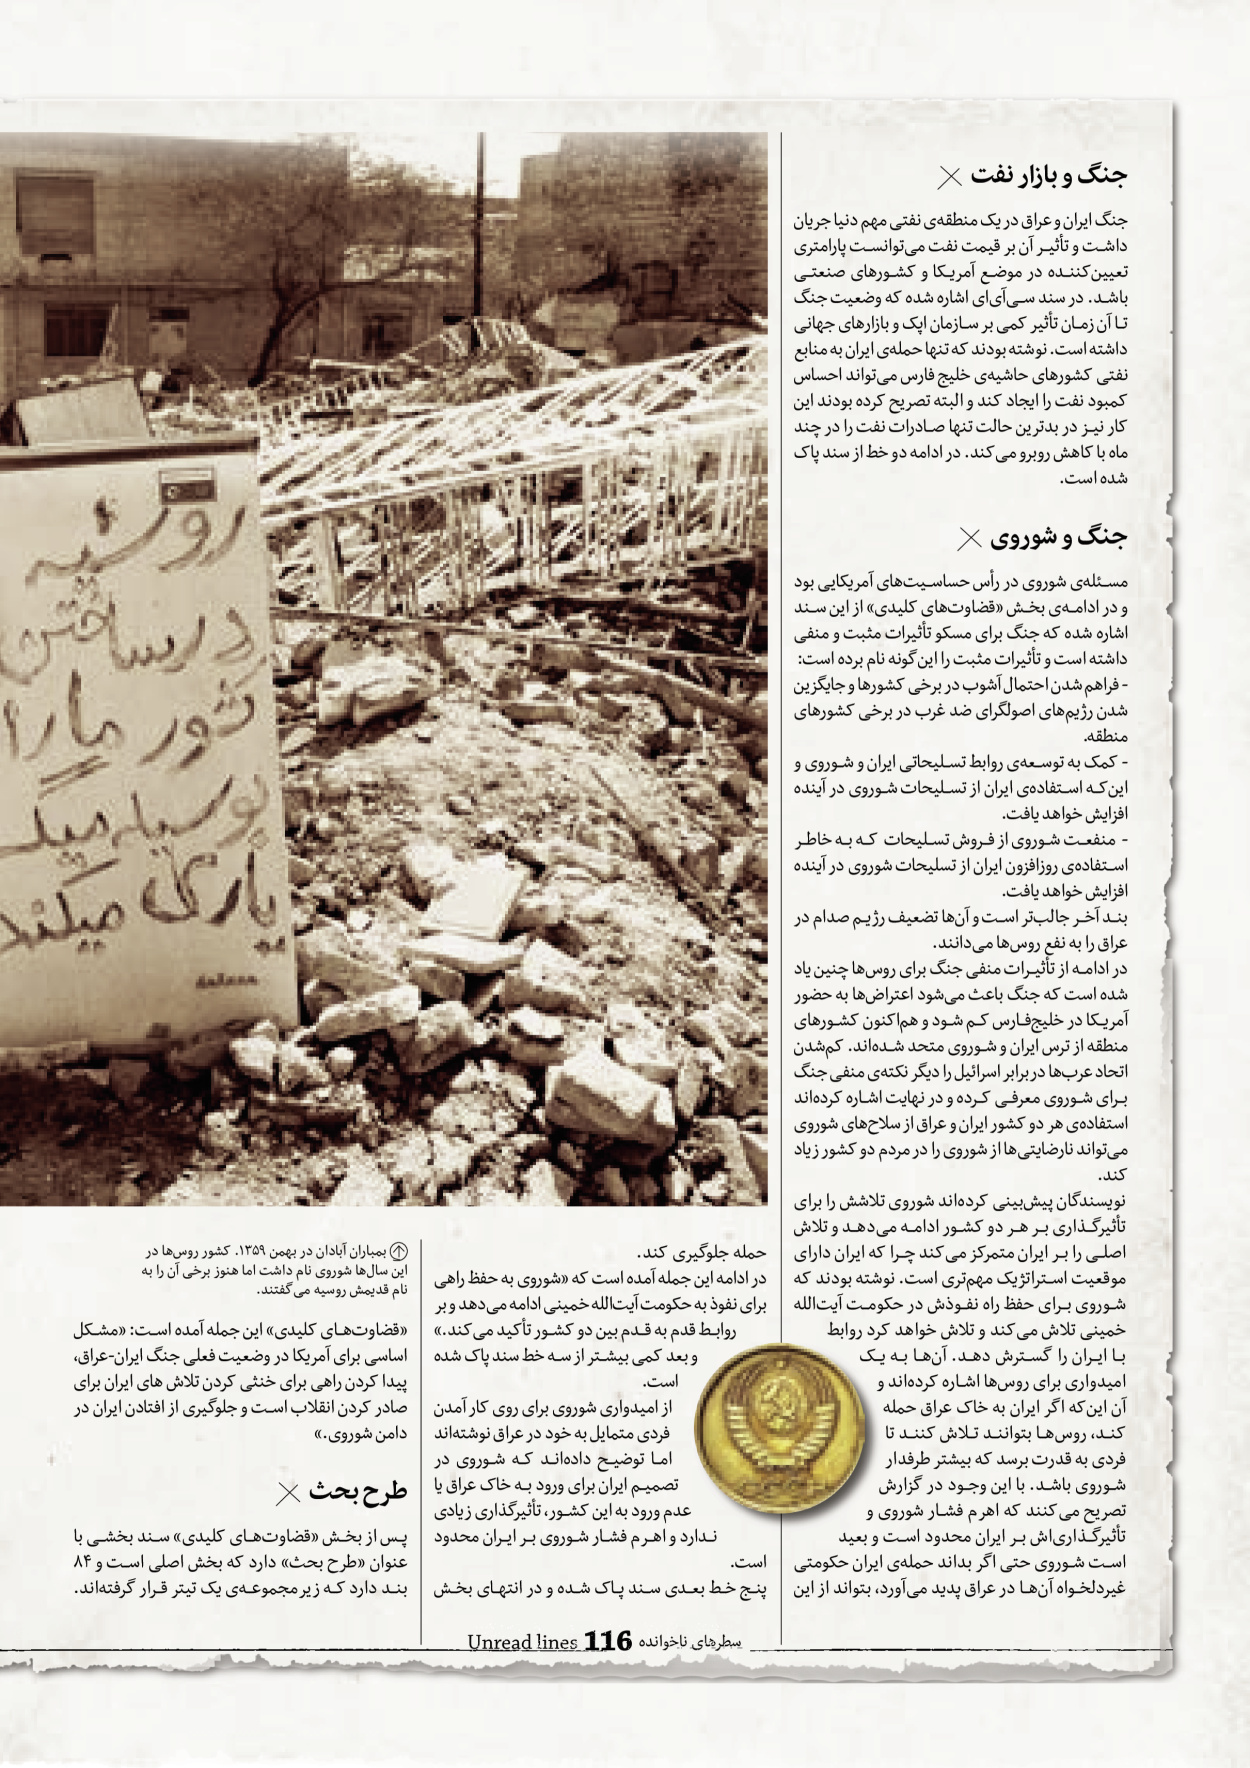 روزنامه ایران - ویژه نامه سطرهای ناخوانده - ۰۳ خرداد ۱۴۰۲ - صفحه ۱۱۶